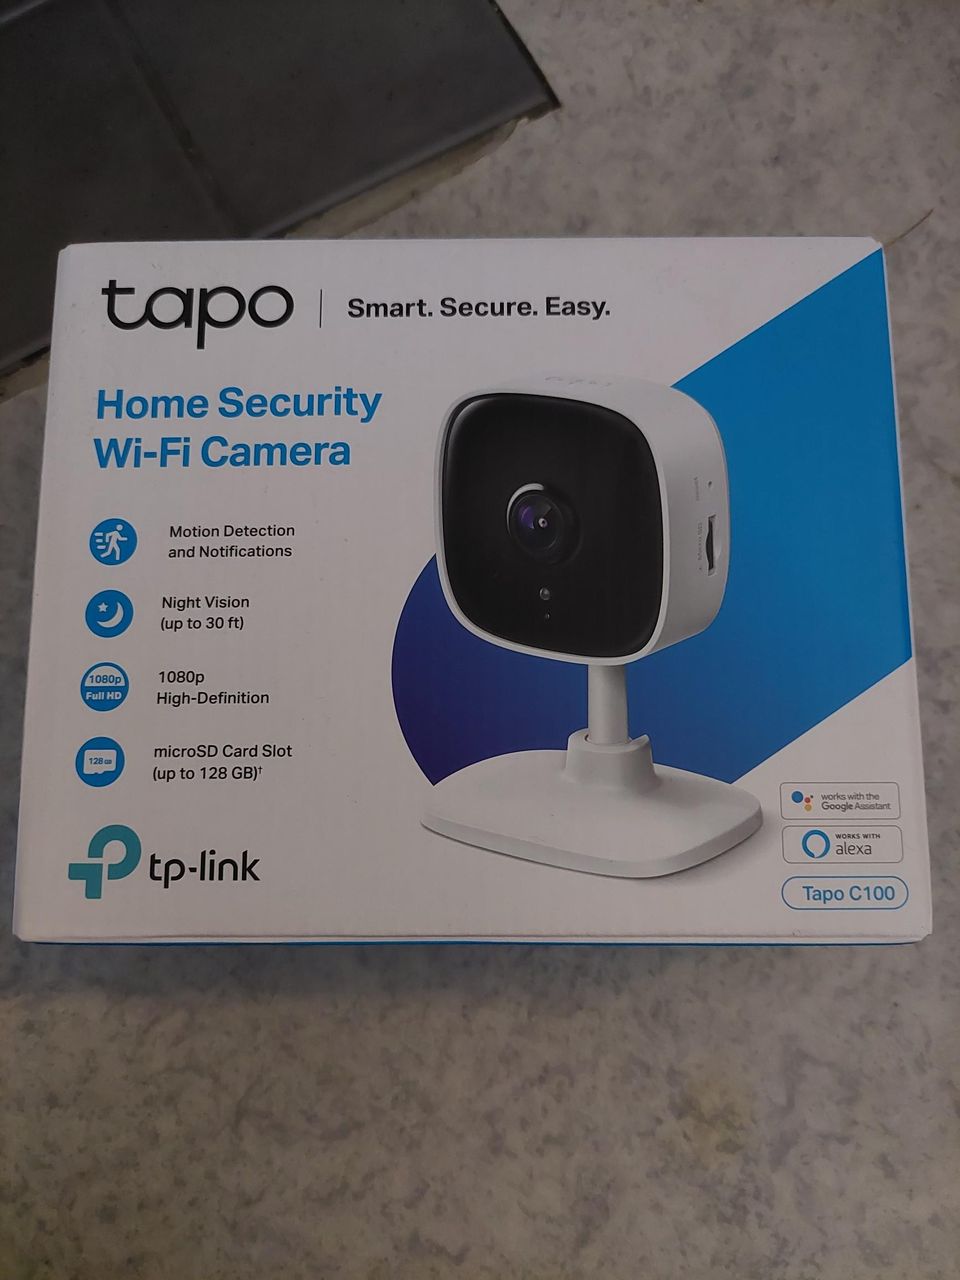 Home security wi-fi camera